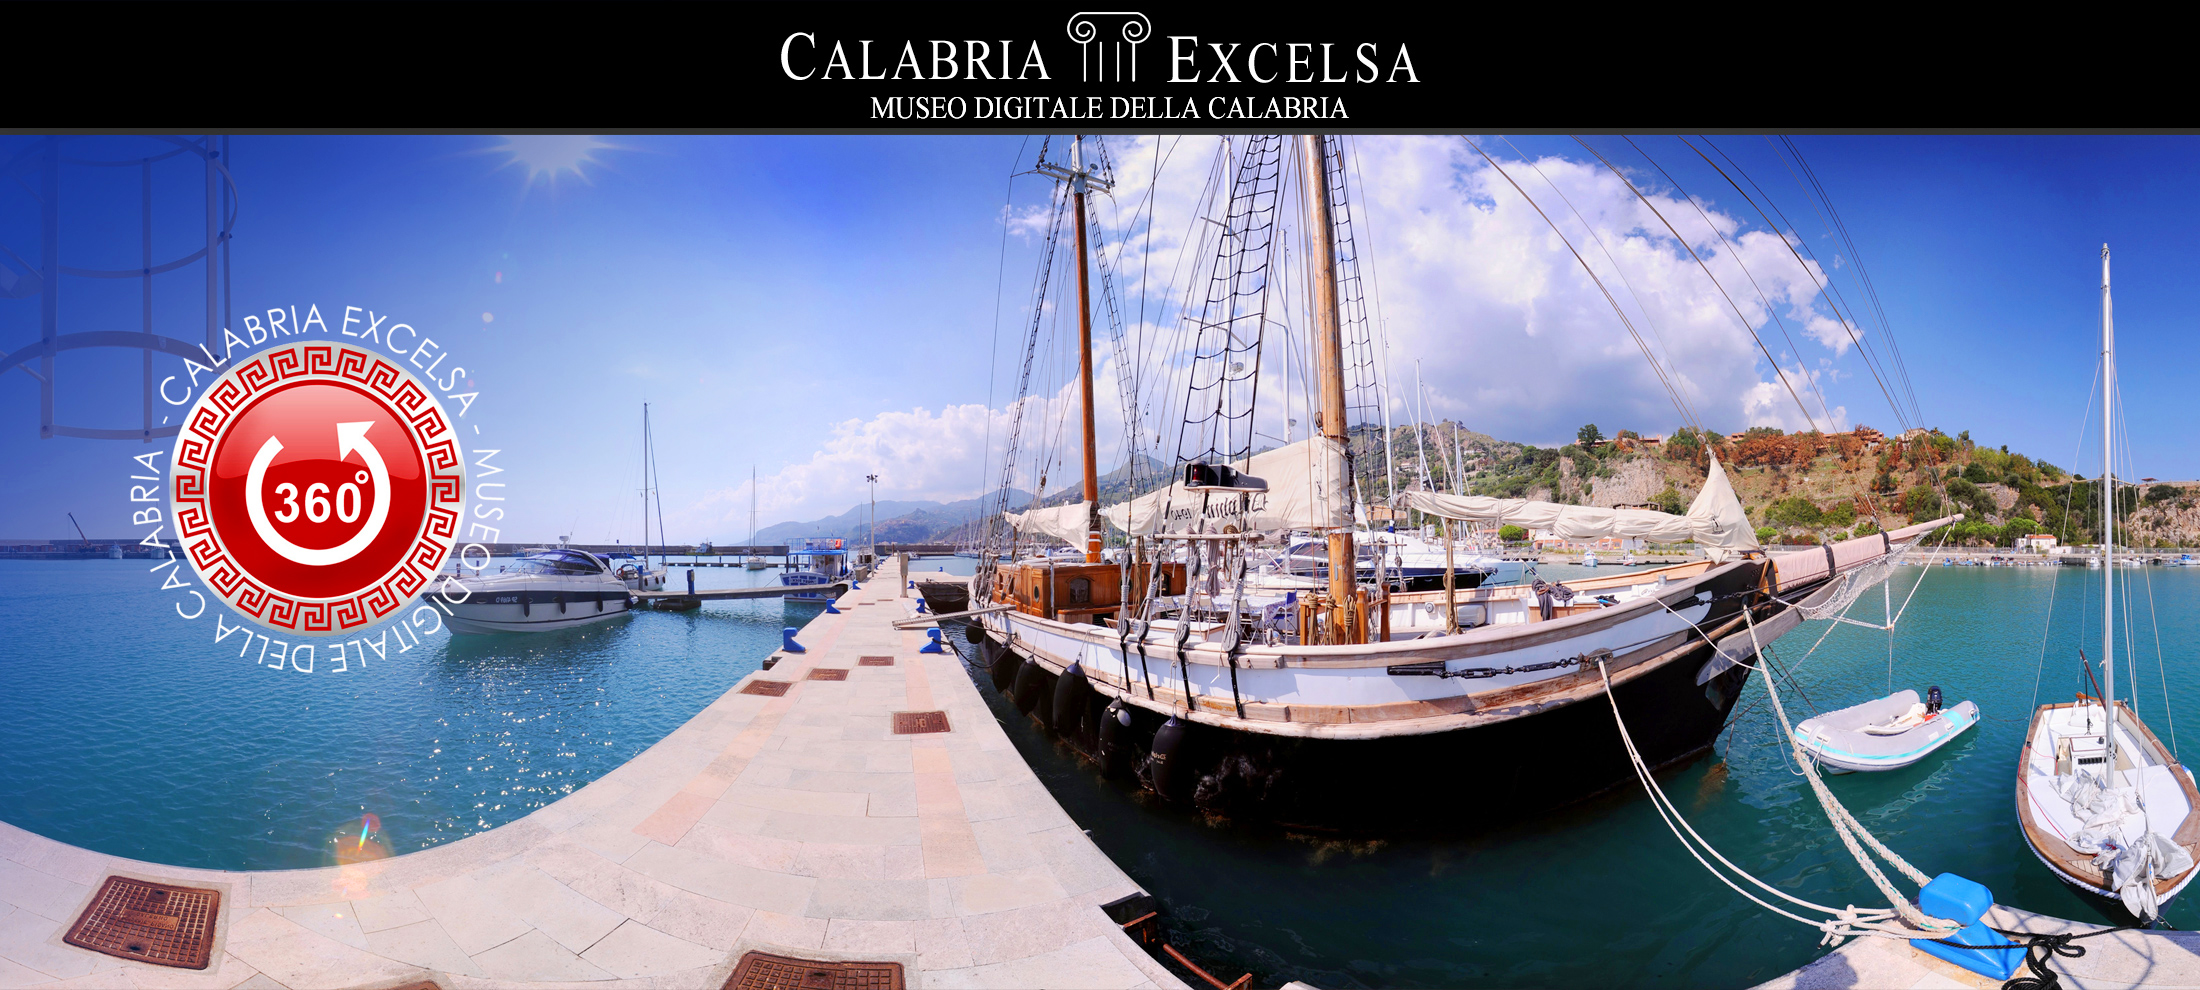 Museo Digitale della Calabria CALABRIAEXCELSA - Museo dei Brettii e del Mare di Cetraro - il Porto - Virtual 1